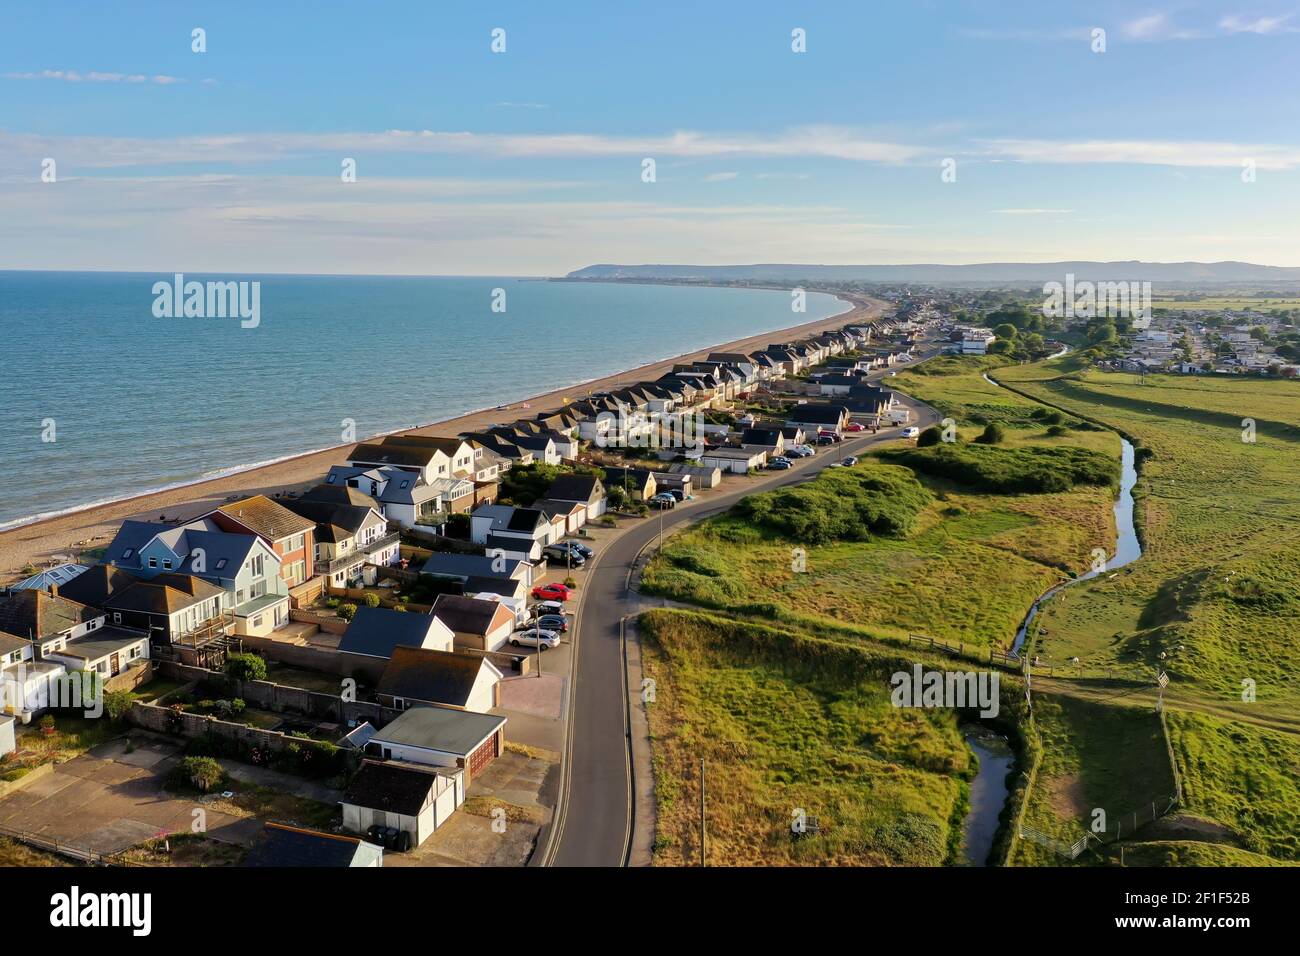 Splendida vista aerea della baia di Normanni e della costa di Eastbourne che mostra la spiaggia, il mare, la città e il sud in lontananza Foto Stock